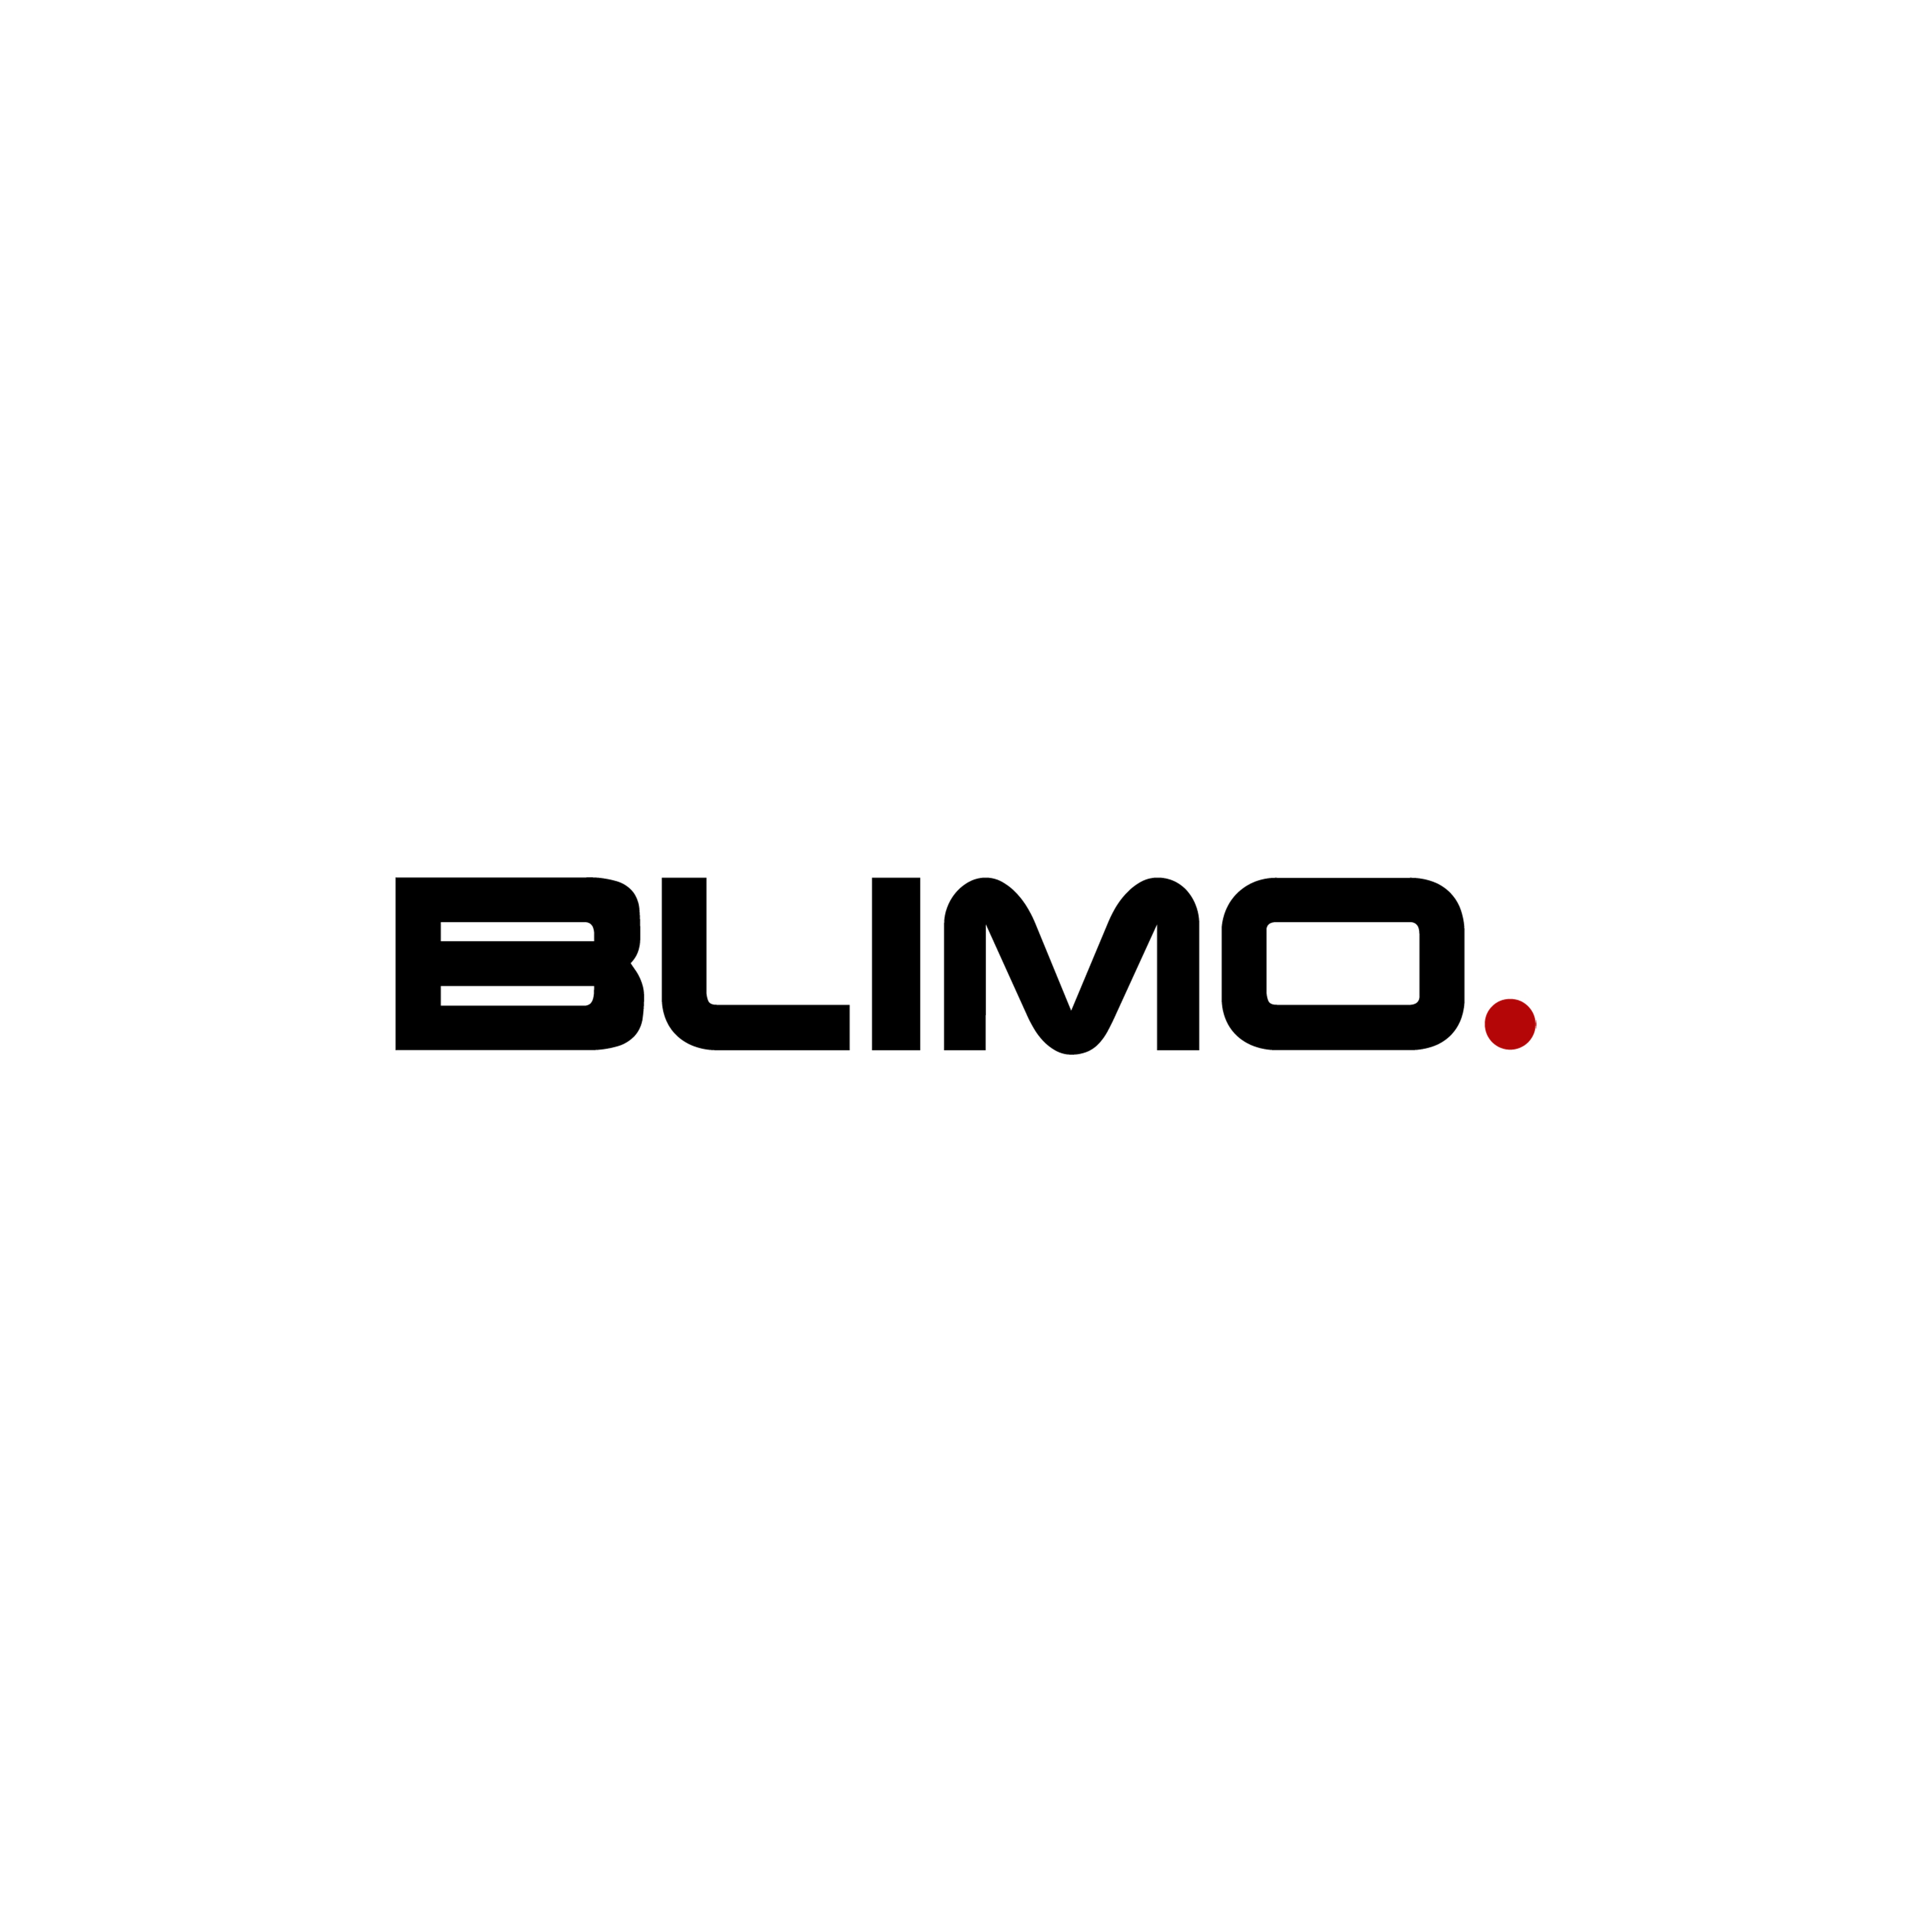 Komplet forhjul Blimo Moto 16x2,5